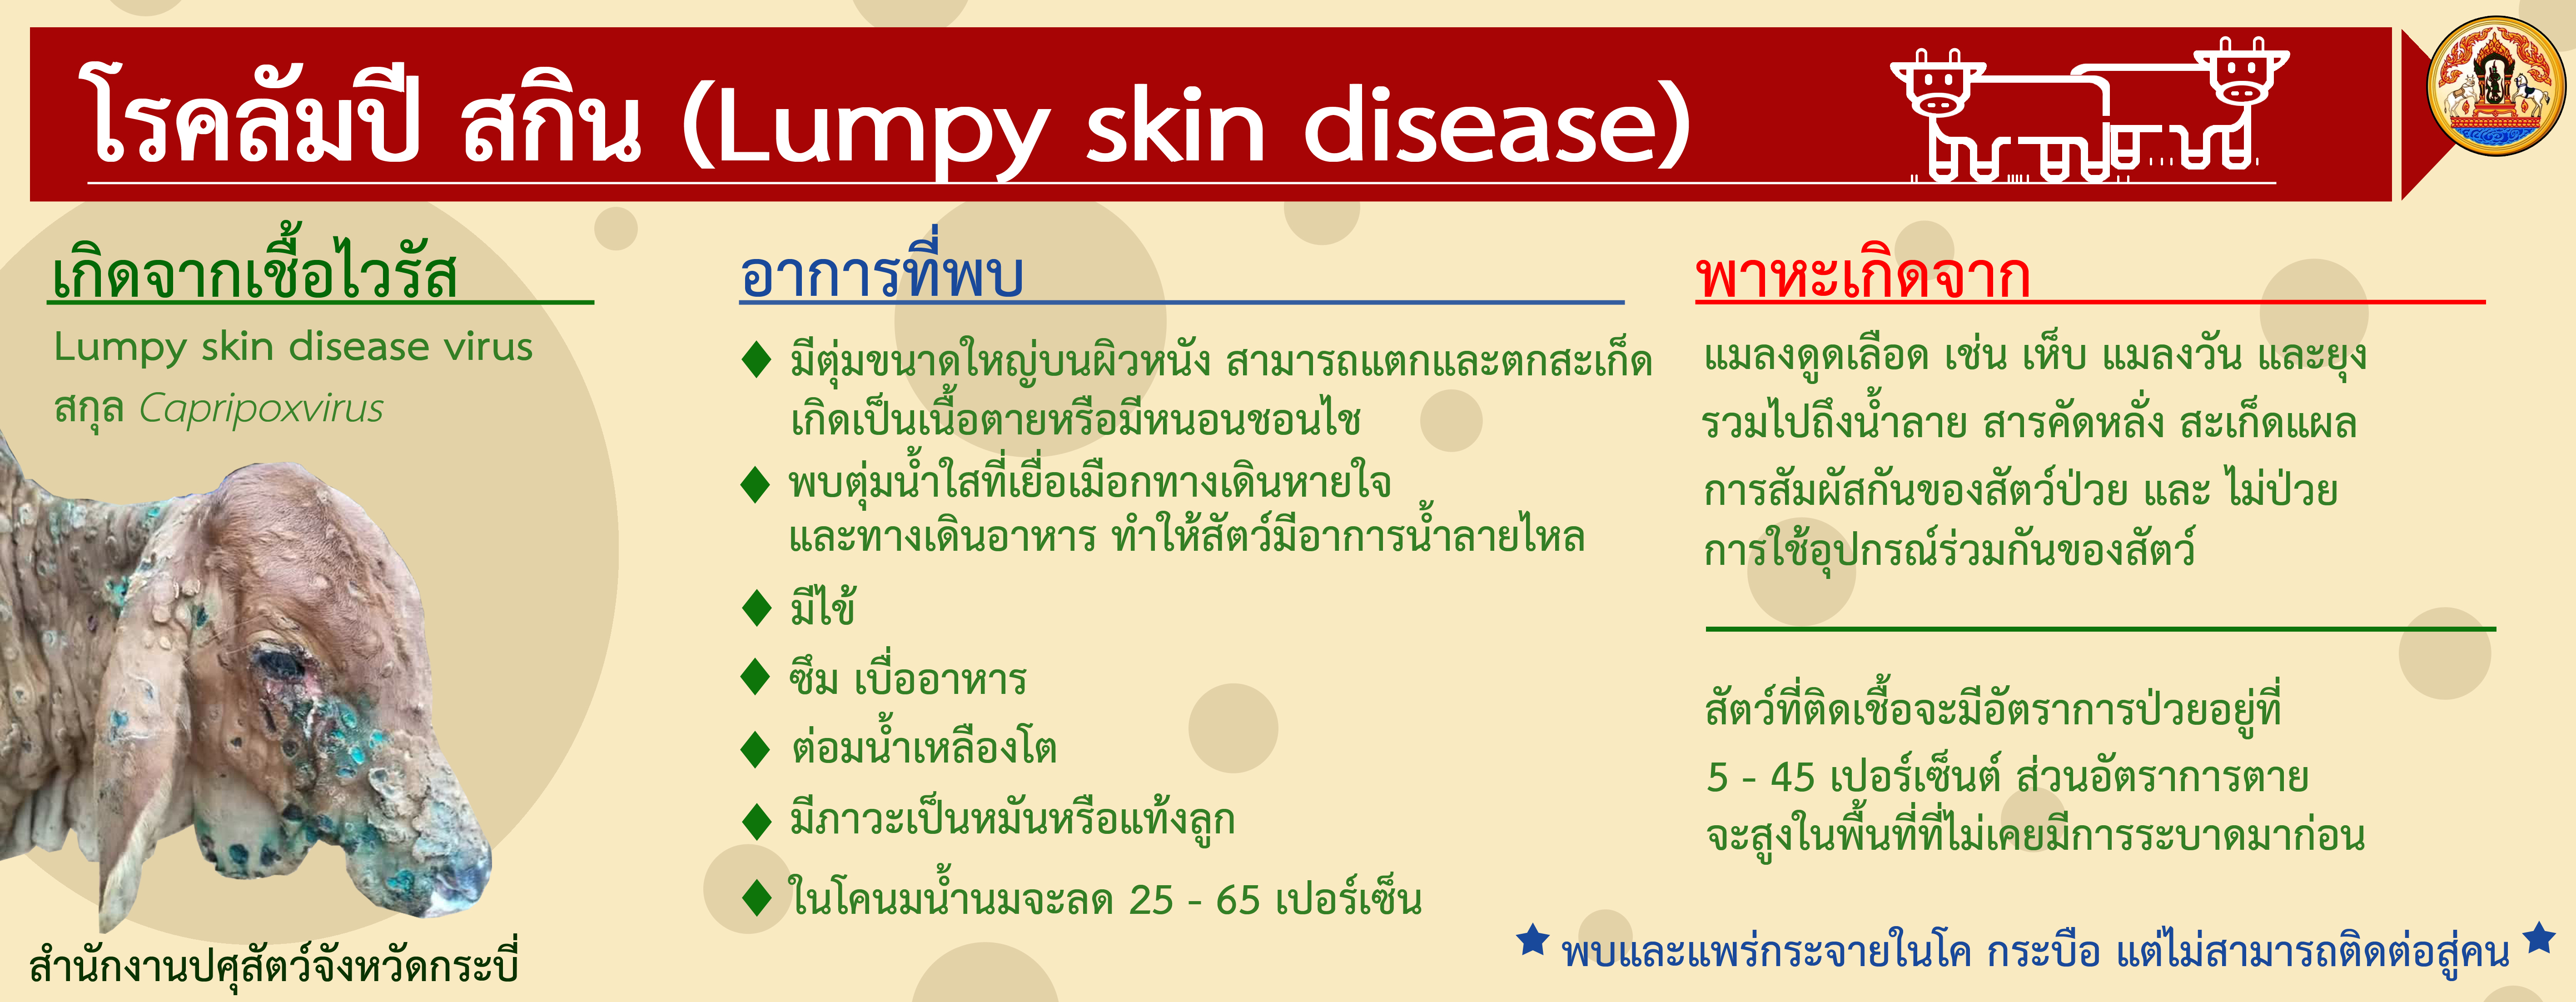 Lumpy skin